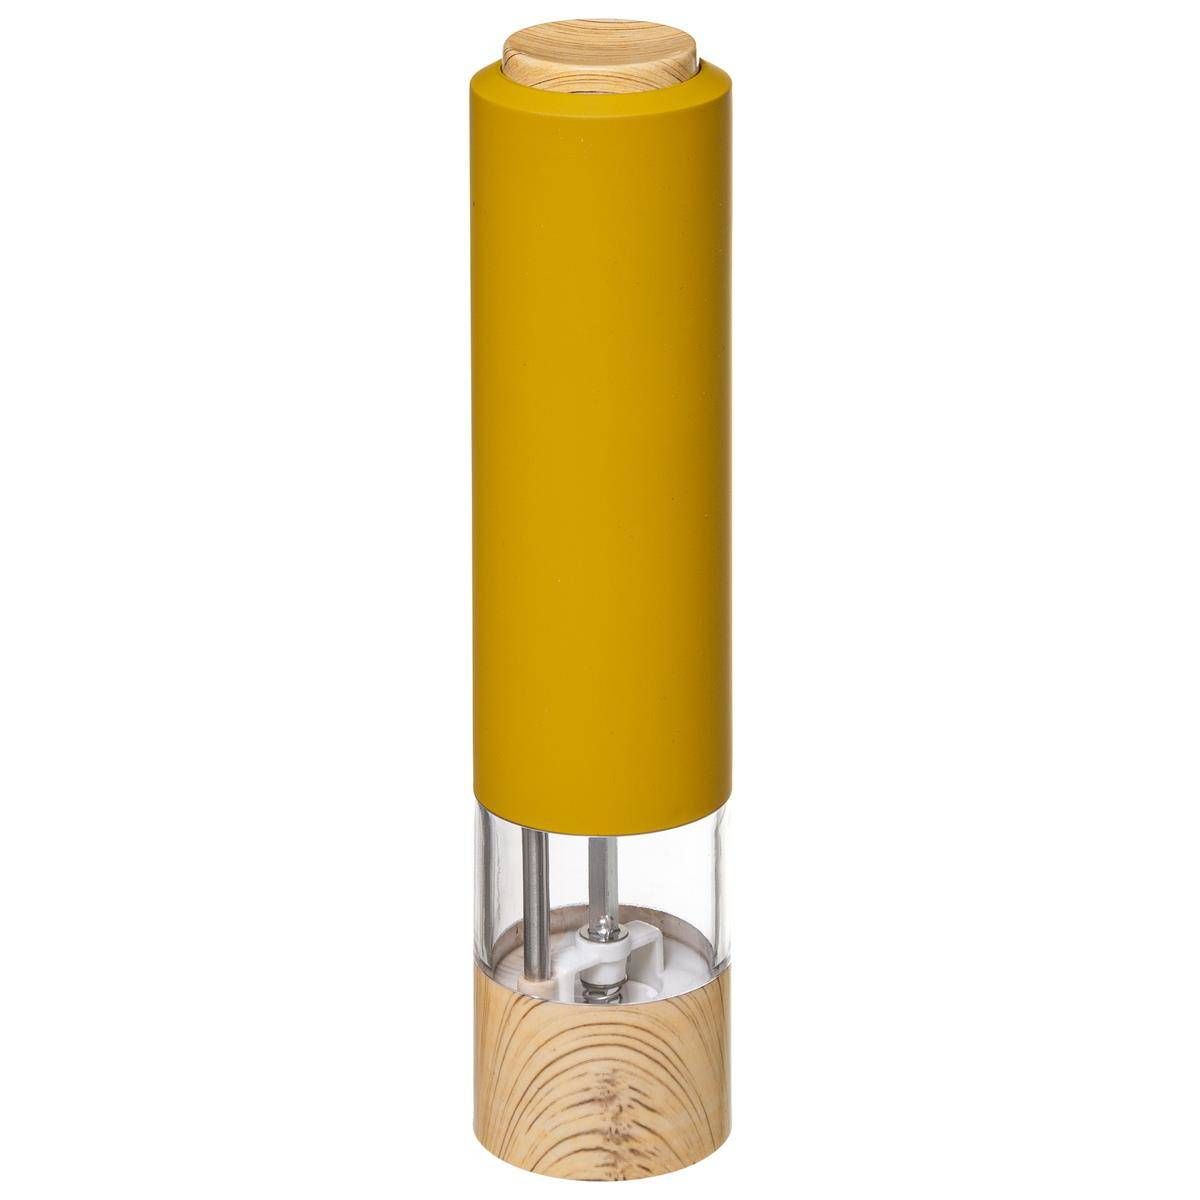 5five Simply Smart Elektrický mlýnek na sůl a pepř, žlutý - EDAXO.CZ s.r.o.